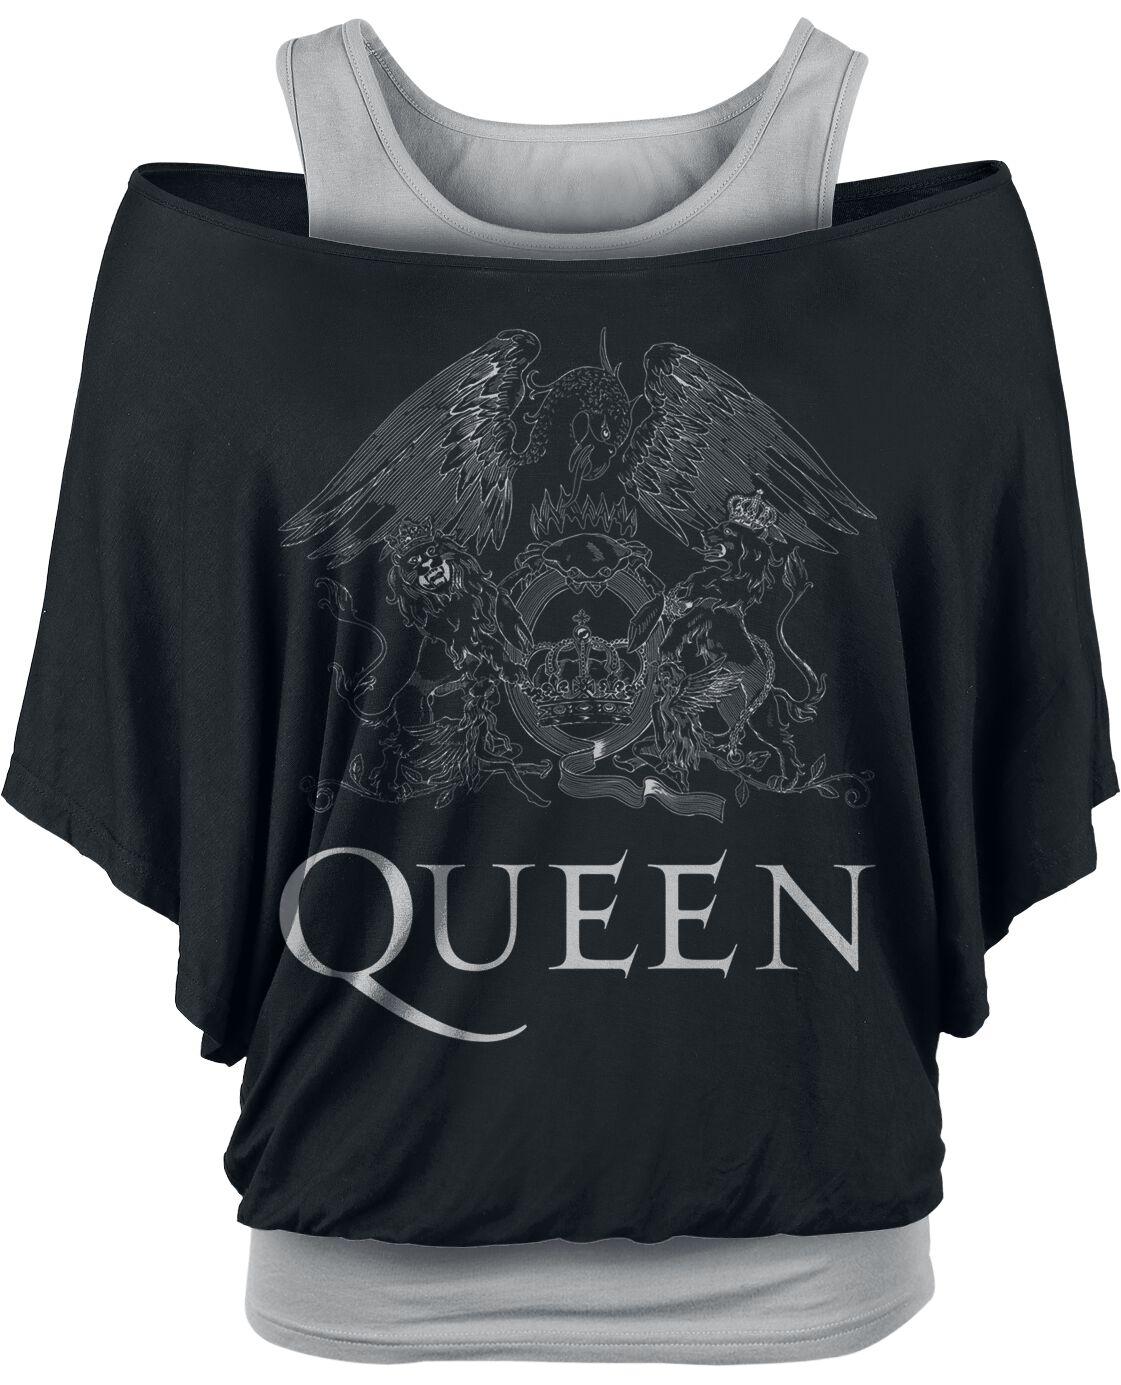 Queen T-Shirt - Crest Logo - M bis XXL - für Damen - Größe XXL - schwarz/grau  - EMP exklusives Merchandise!